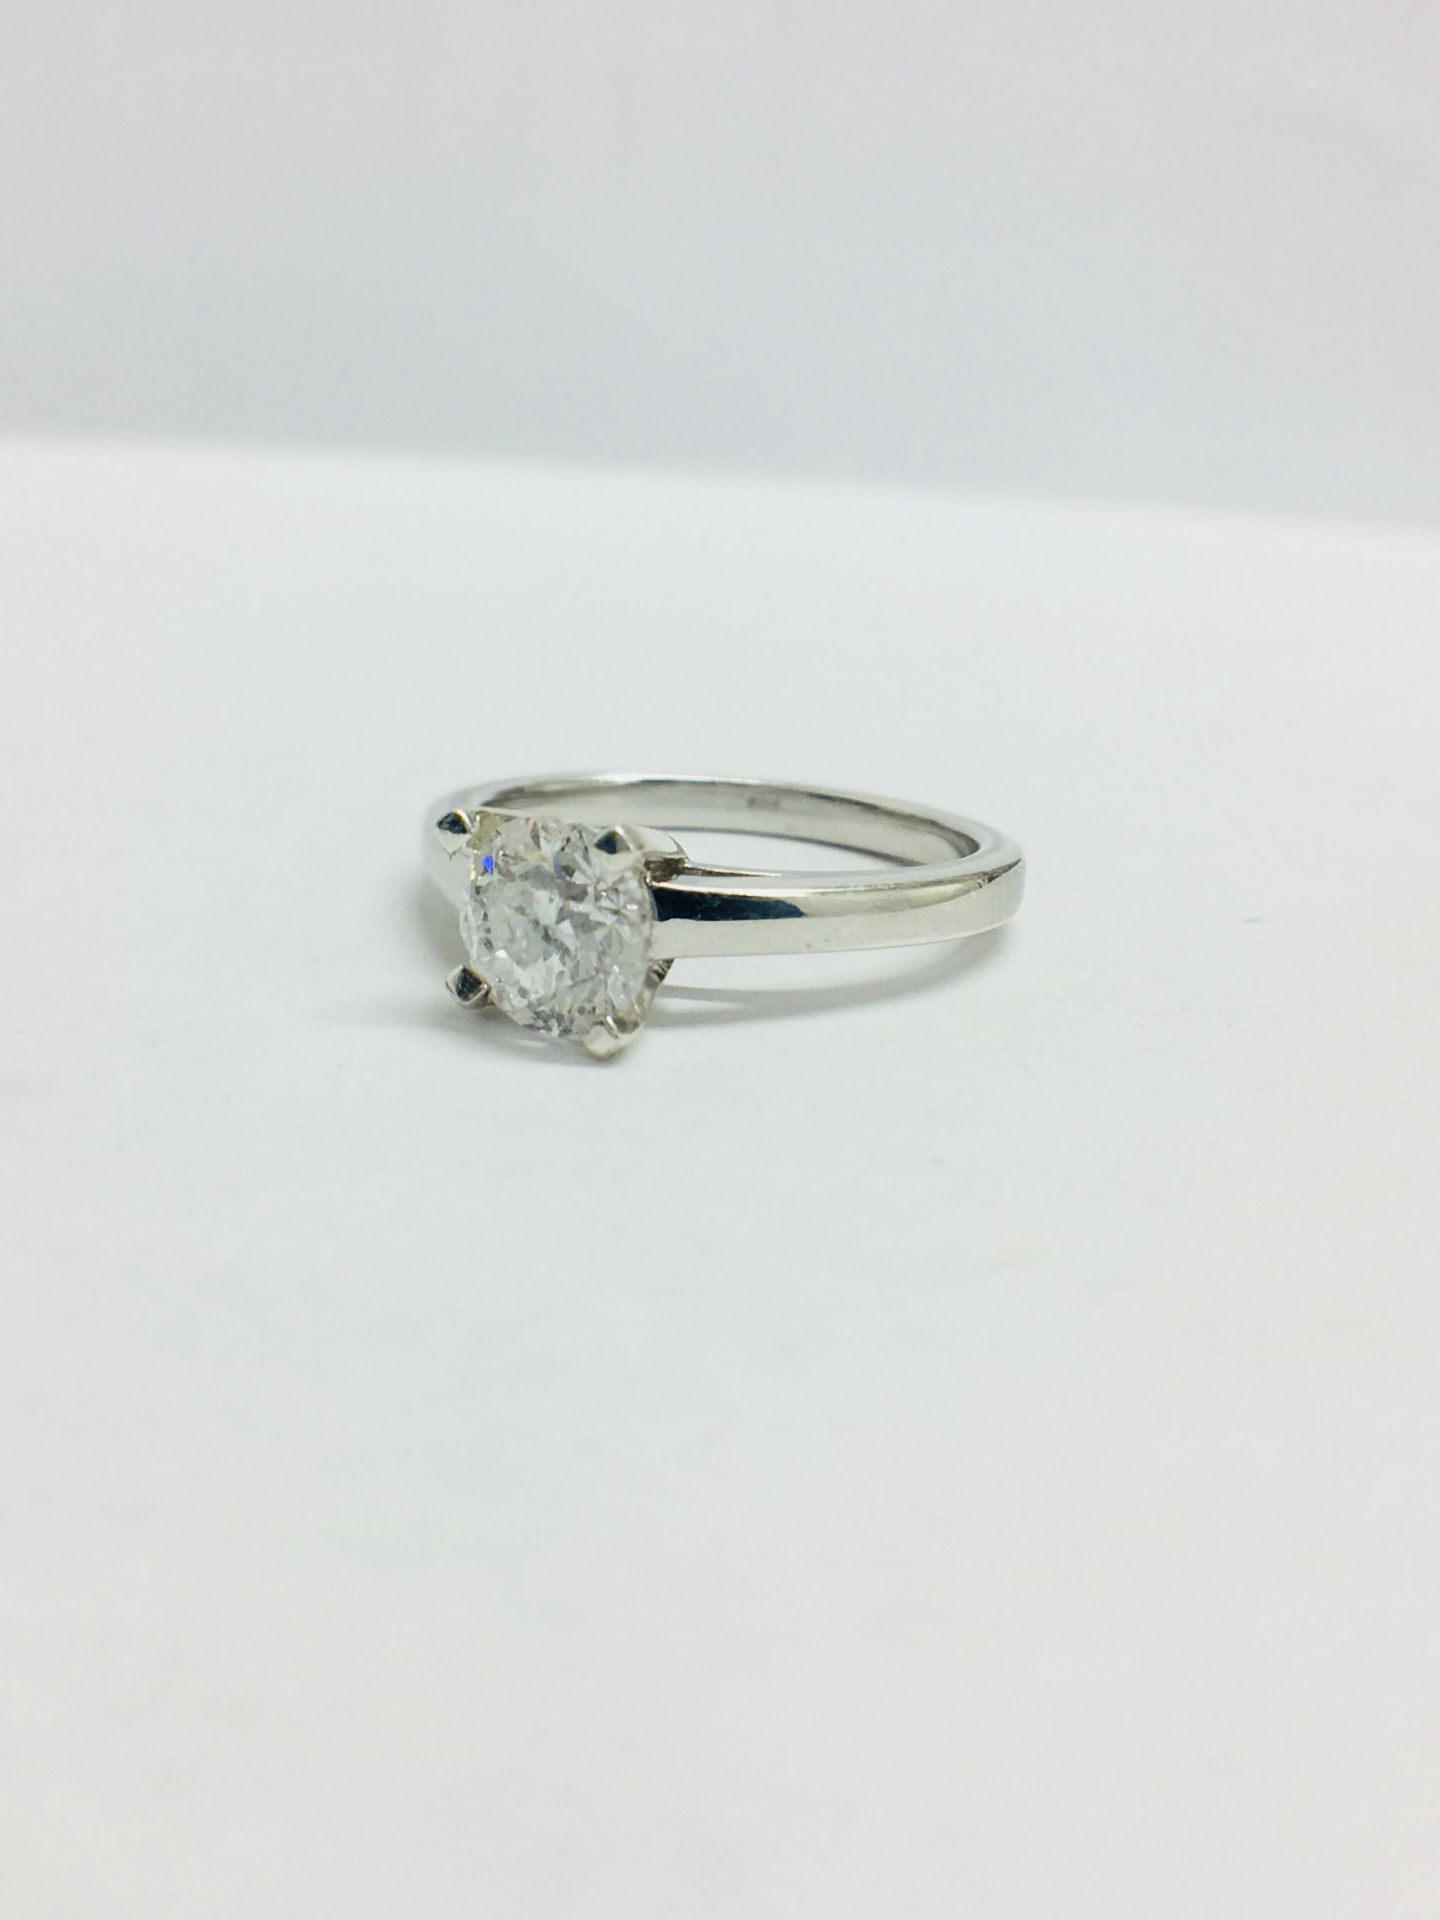 1.03Ct Diamond Solitaire Ring Set In Platinum. - Image 2 of 8